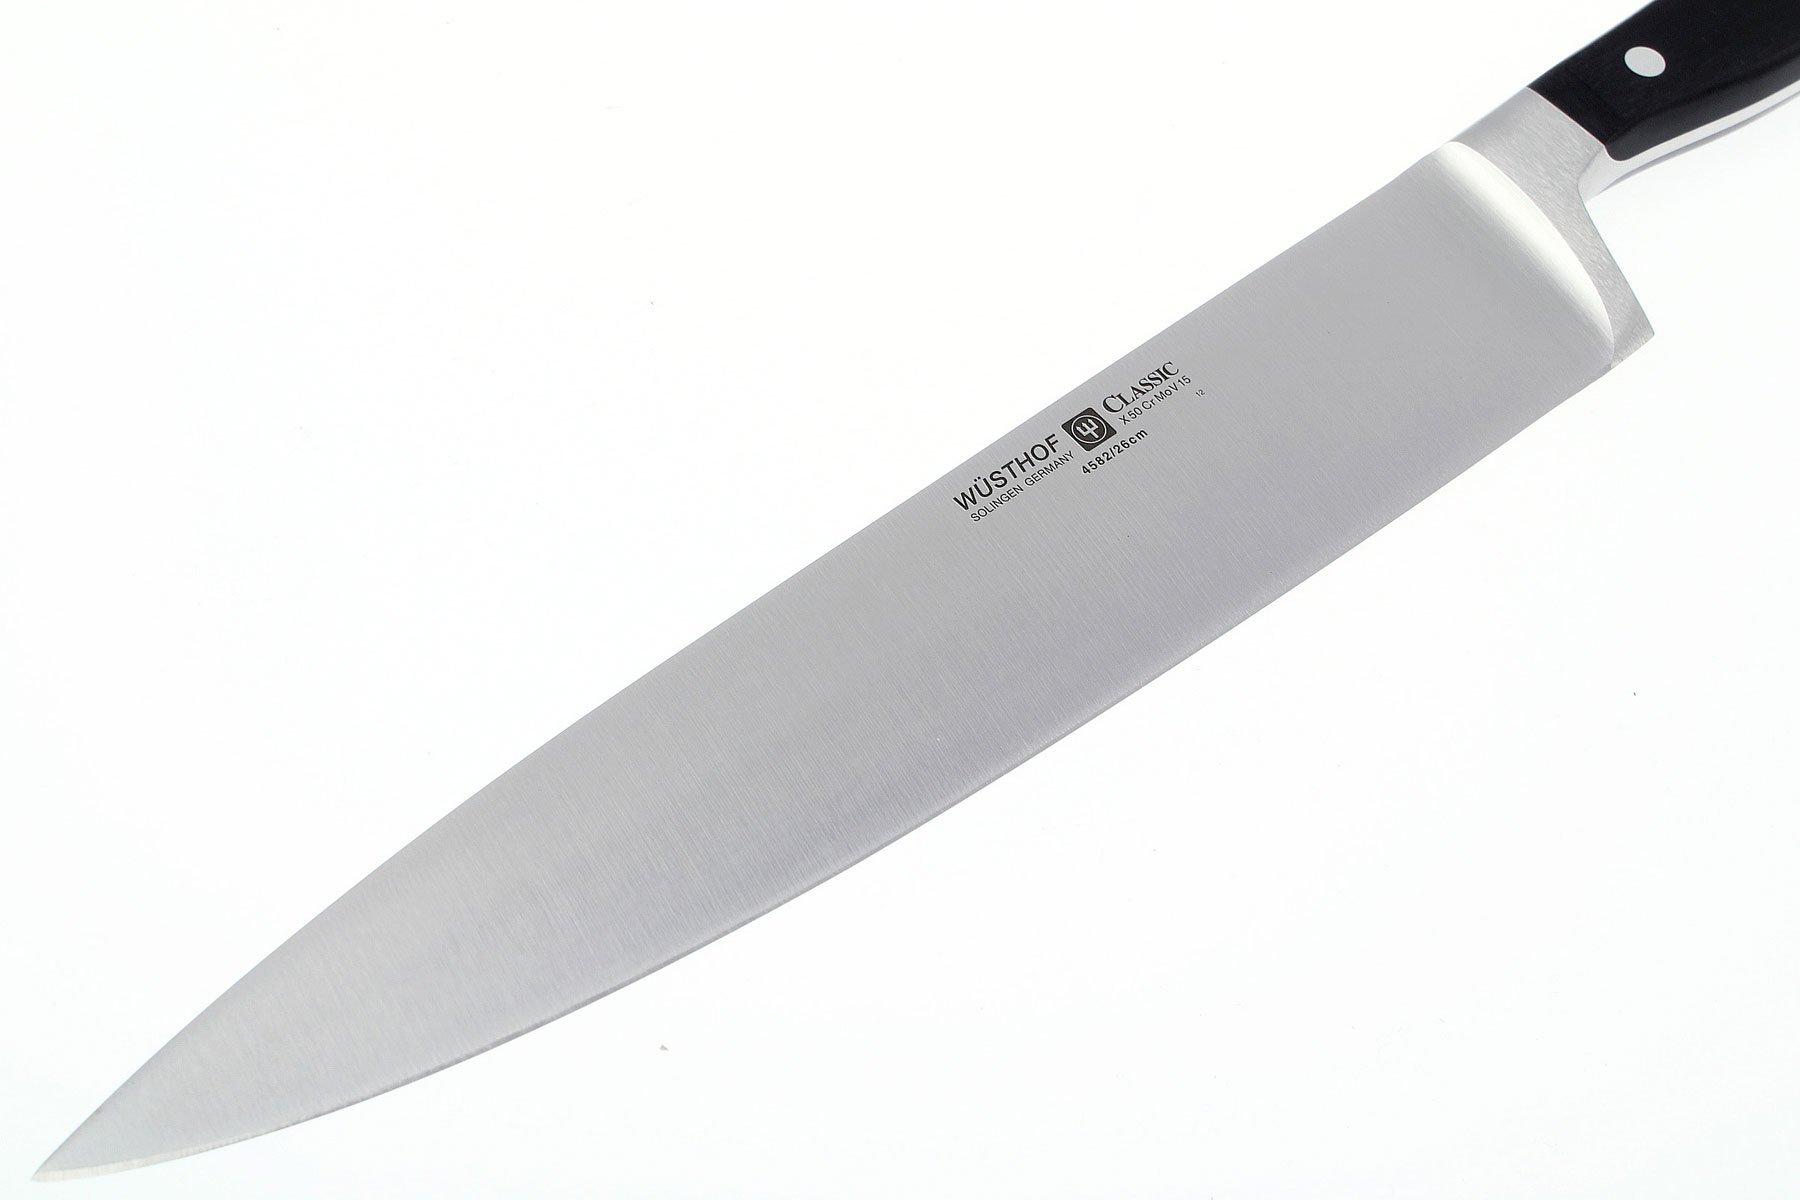 Classic Chinese Chef Knife, 18 cm - Wüsthof @ RoyalDesign